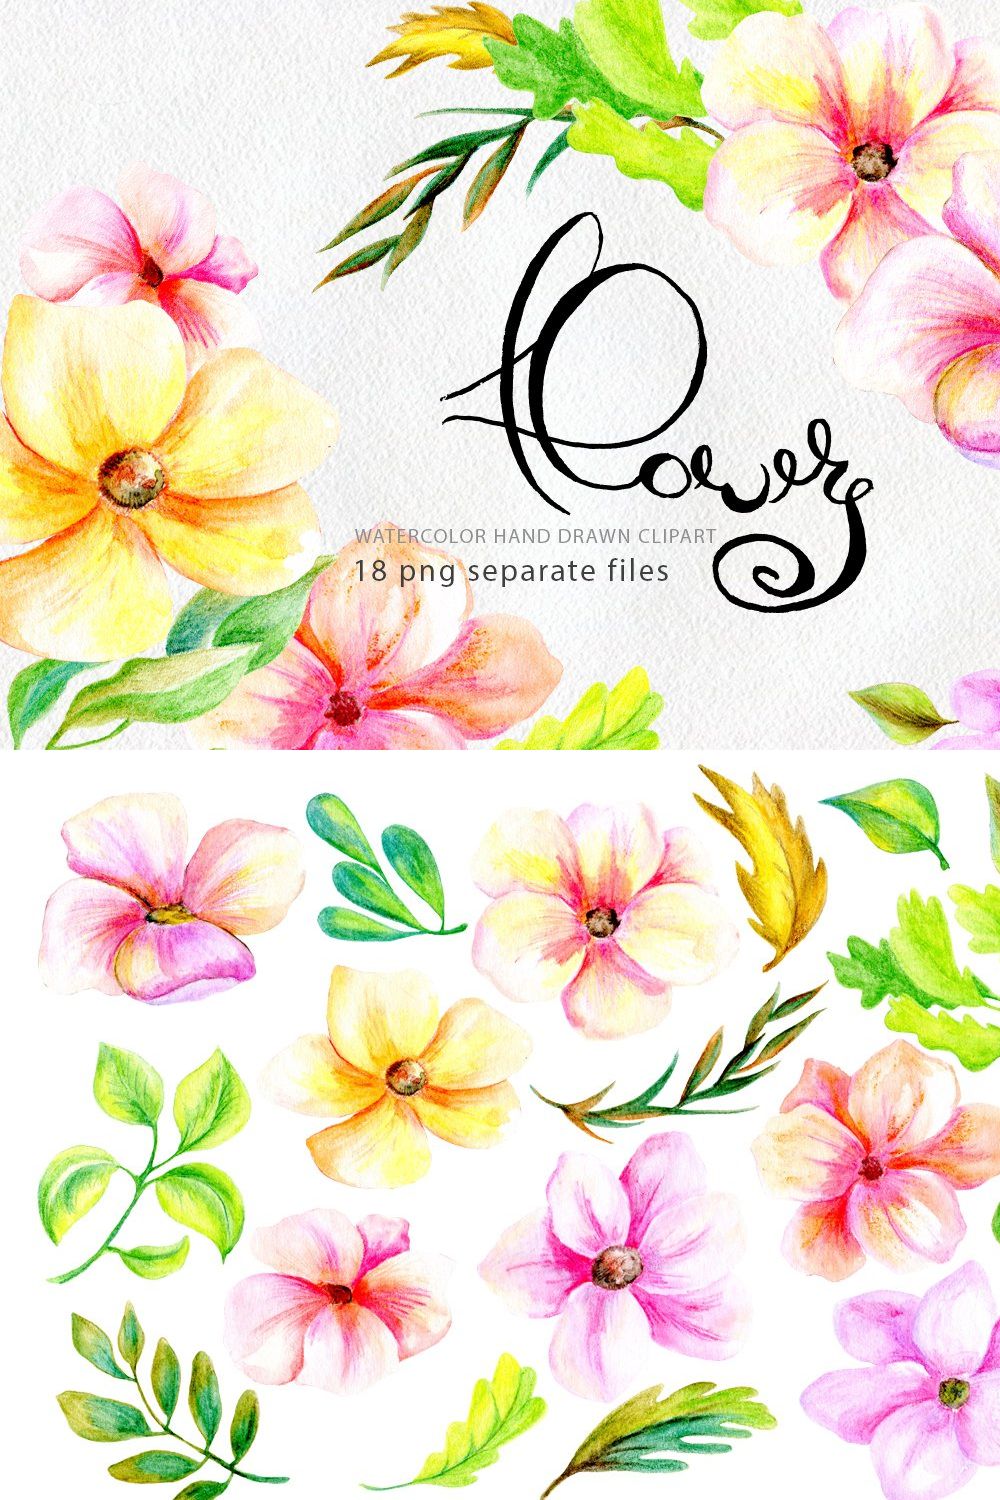 Pencil & watercolor florals pinterest preview image.